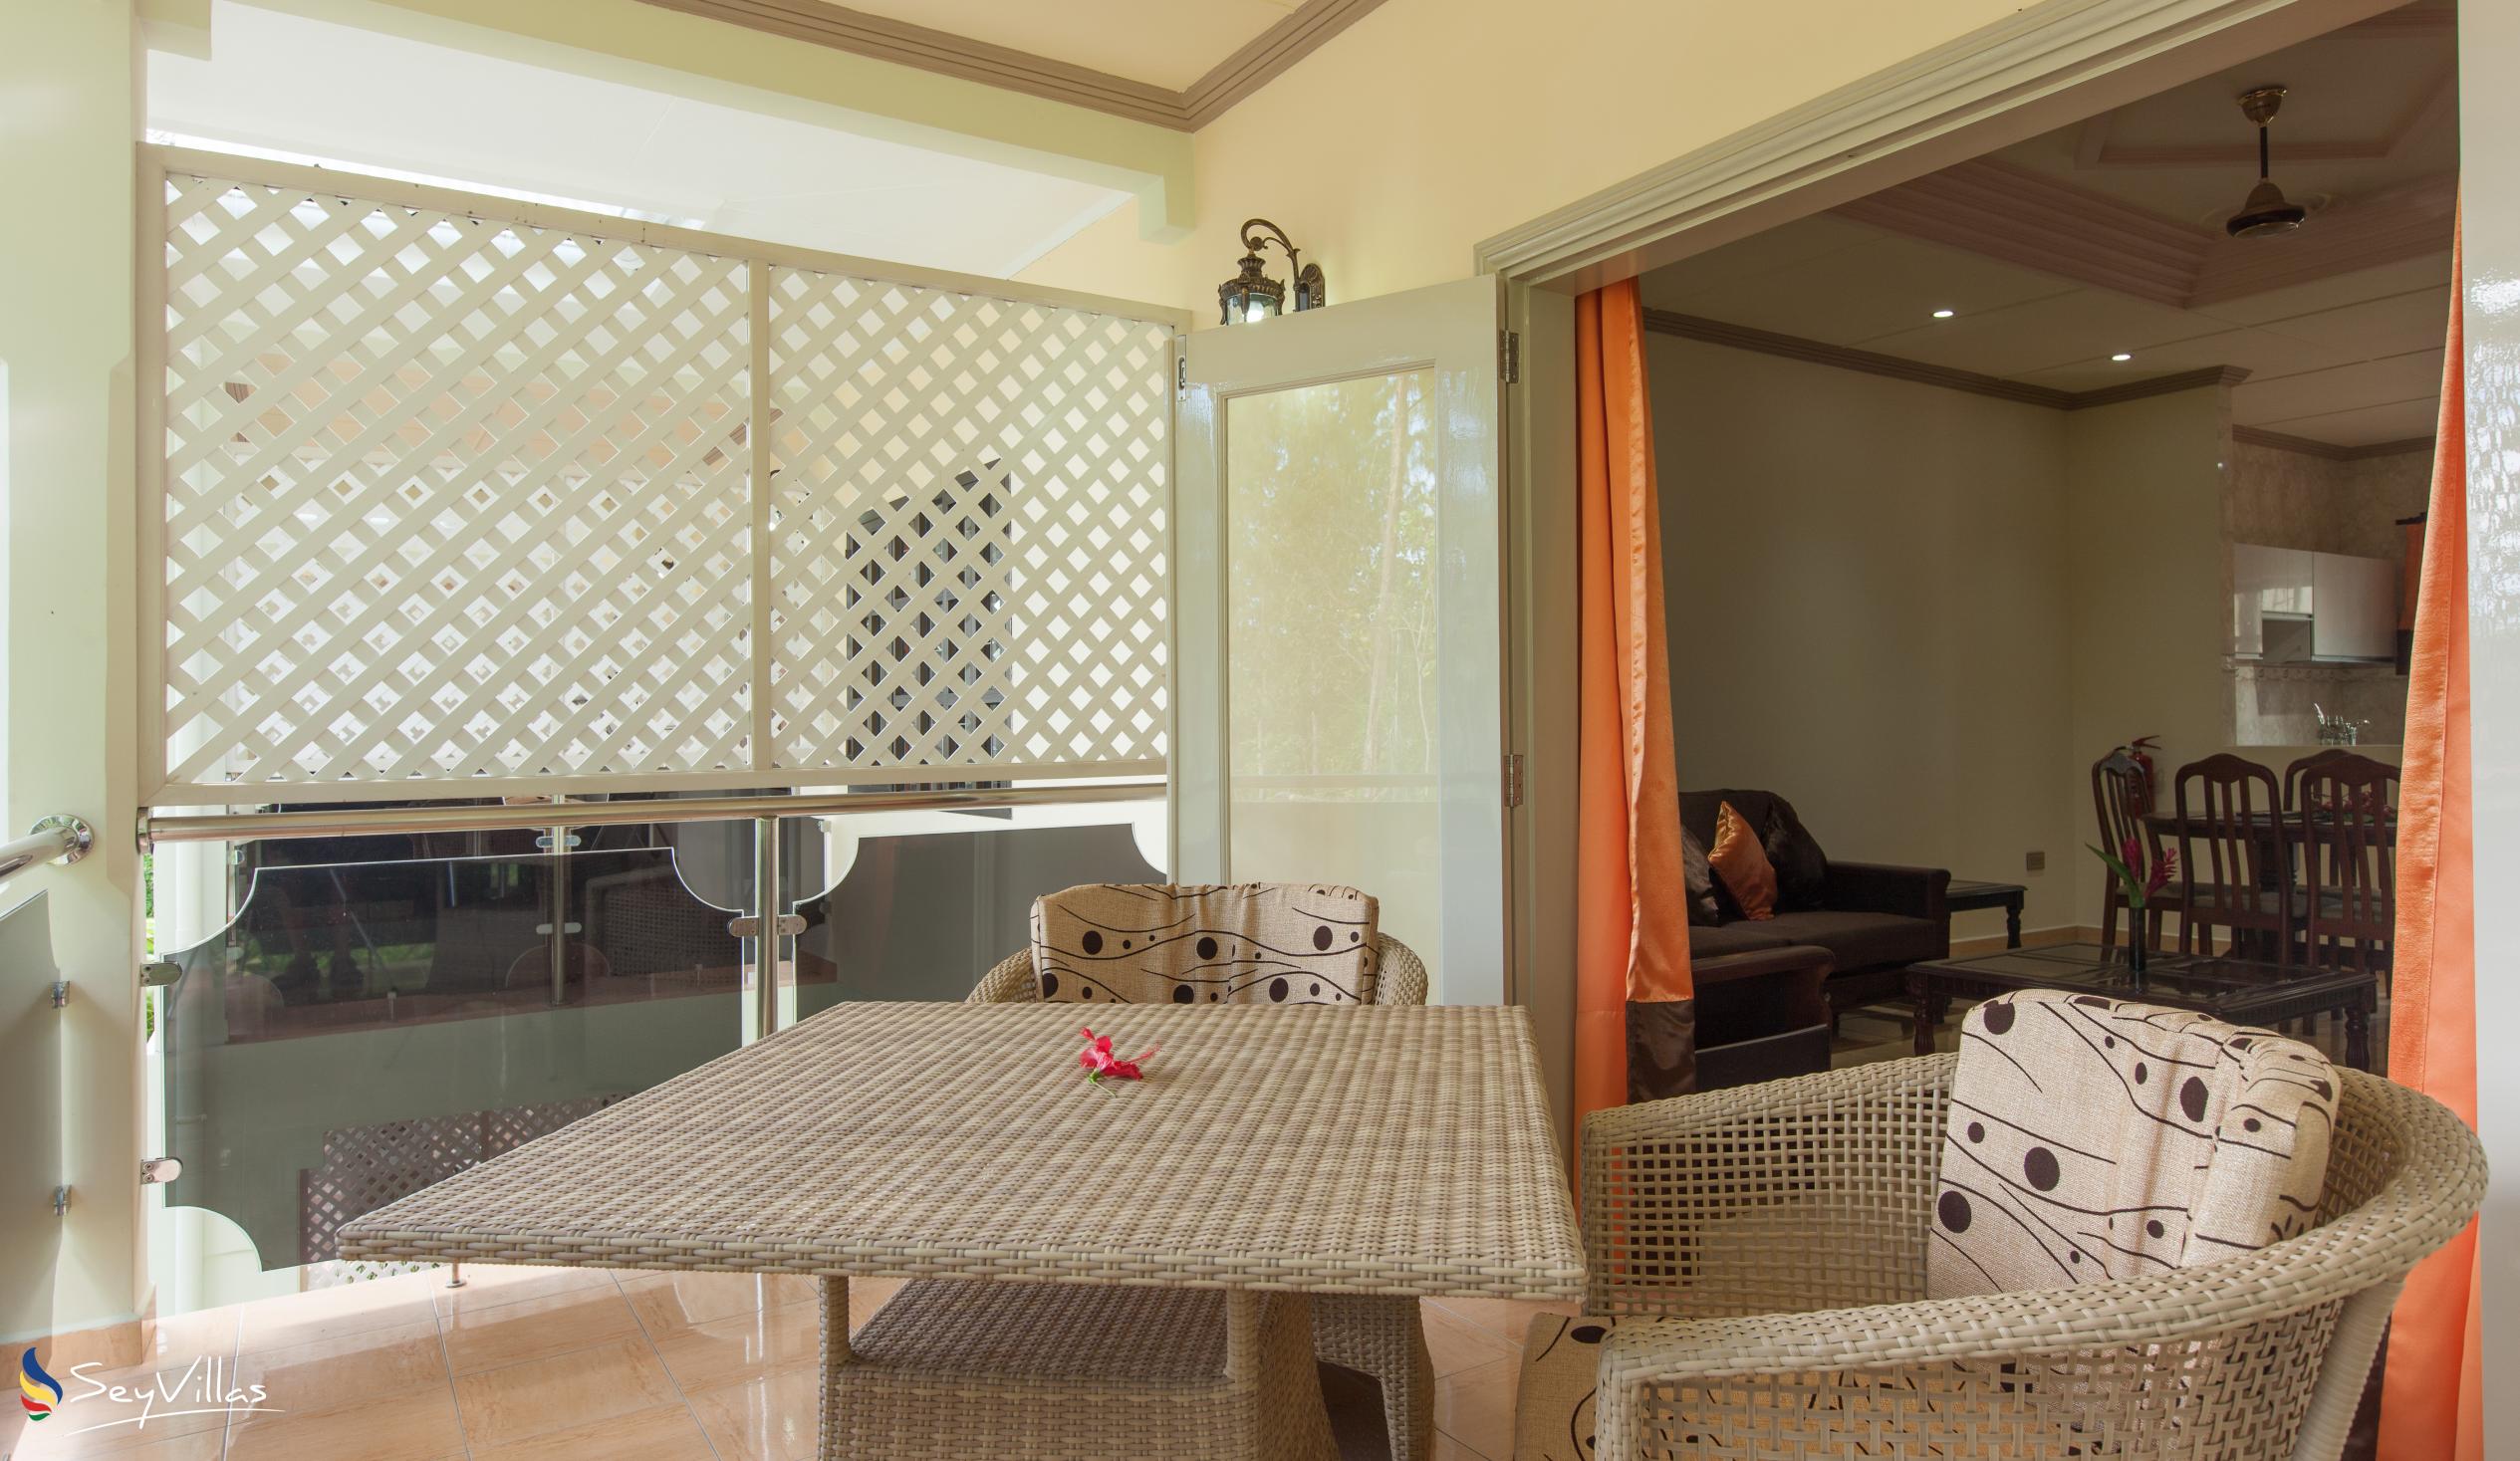 Foto 30: Chez Bea Villa - Appartamento con 2 camere - Praslin (Seychelles)